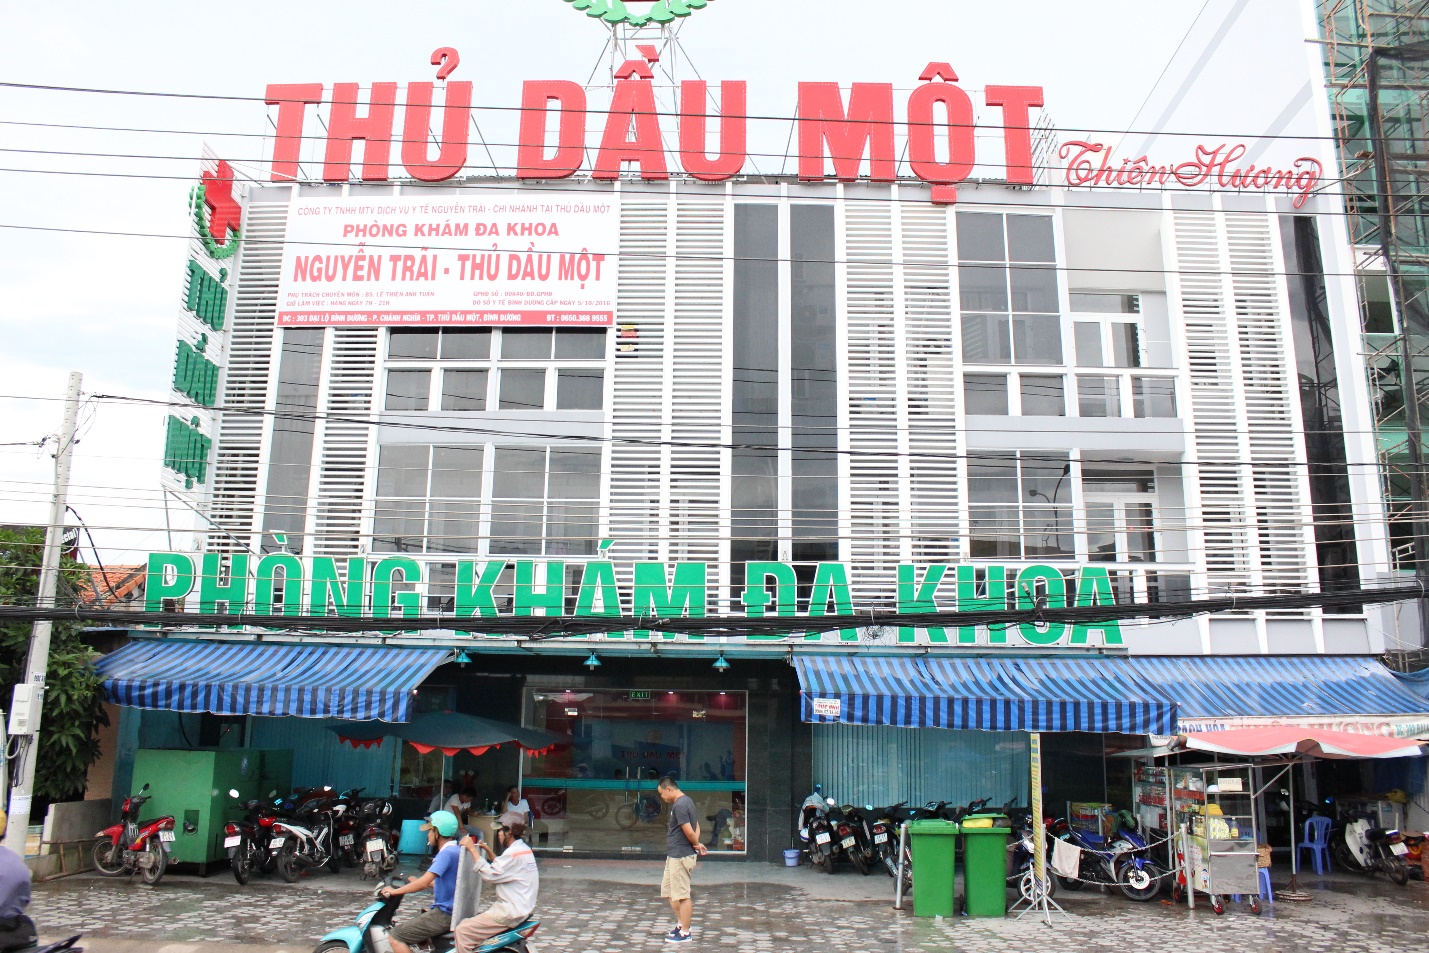 Phòng khám đa khoa Nguyễn Trãi - Thủ Dầu Một với đầy đủ giấy phép hoạt động do Sở Y tế ban hành. Mọi công - Ảnh 2.